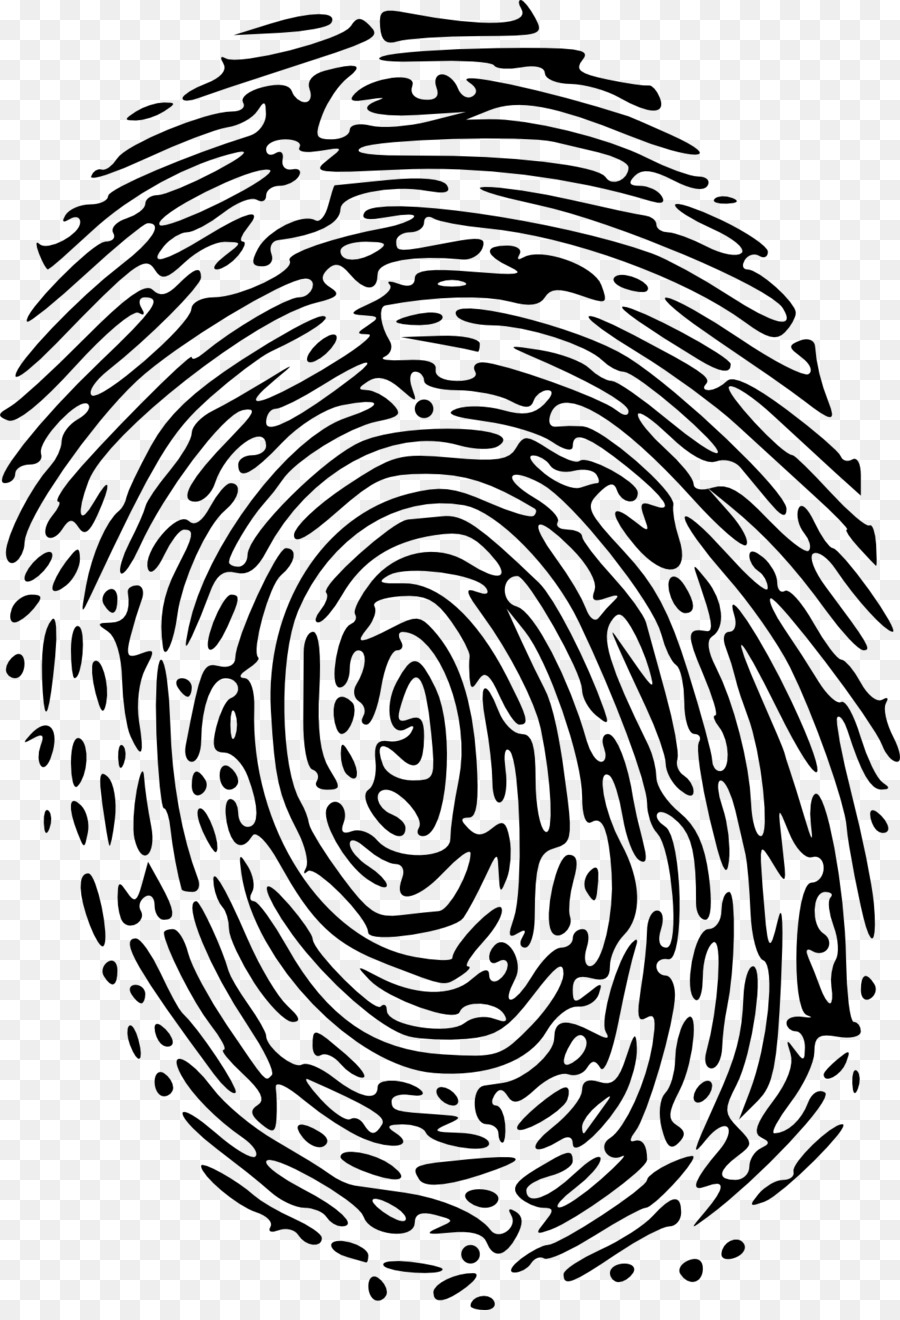 Fingerprint Clip art - hao png download - 1319*1920 - Free Transparent Fingerprint png Download.